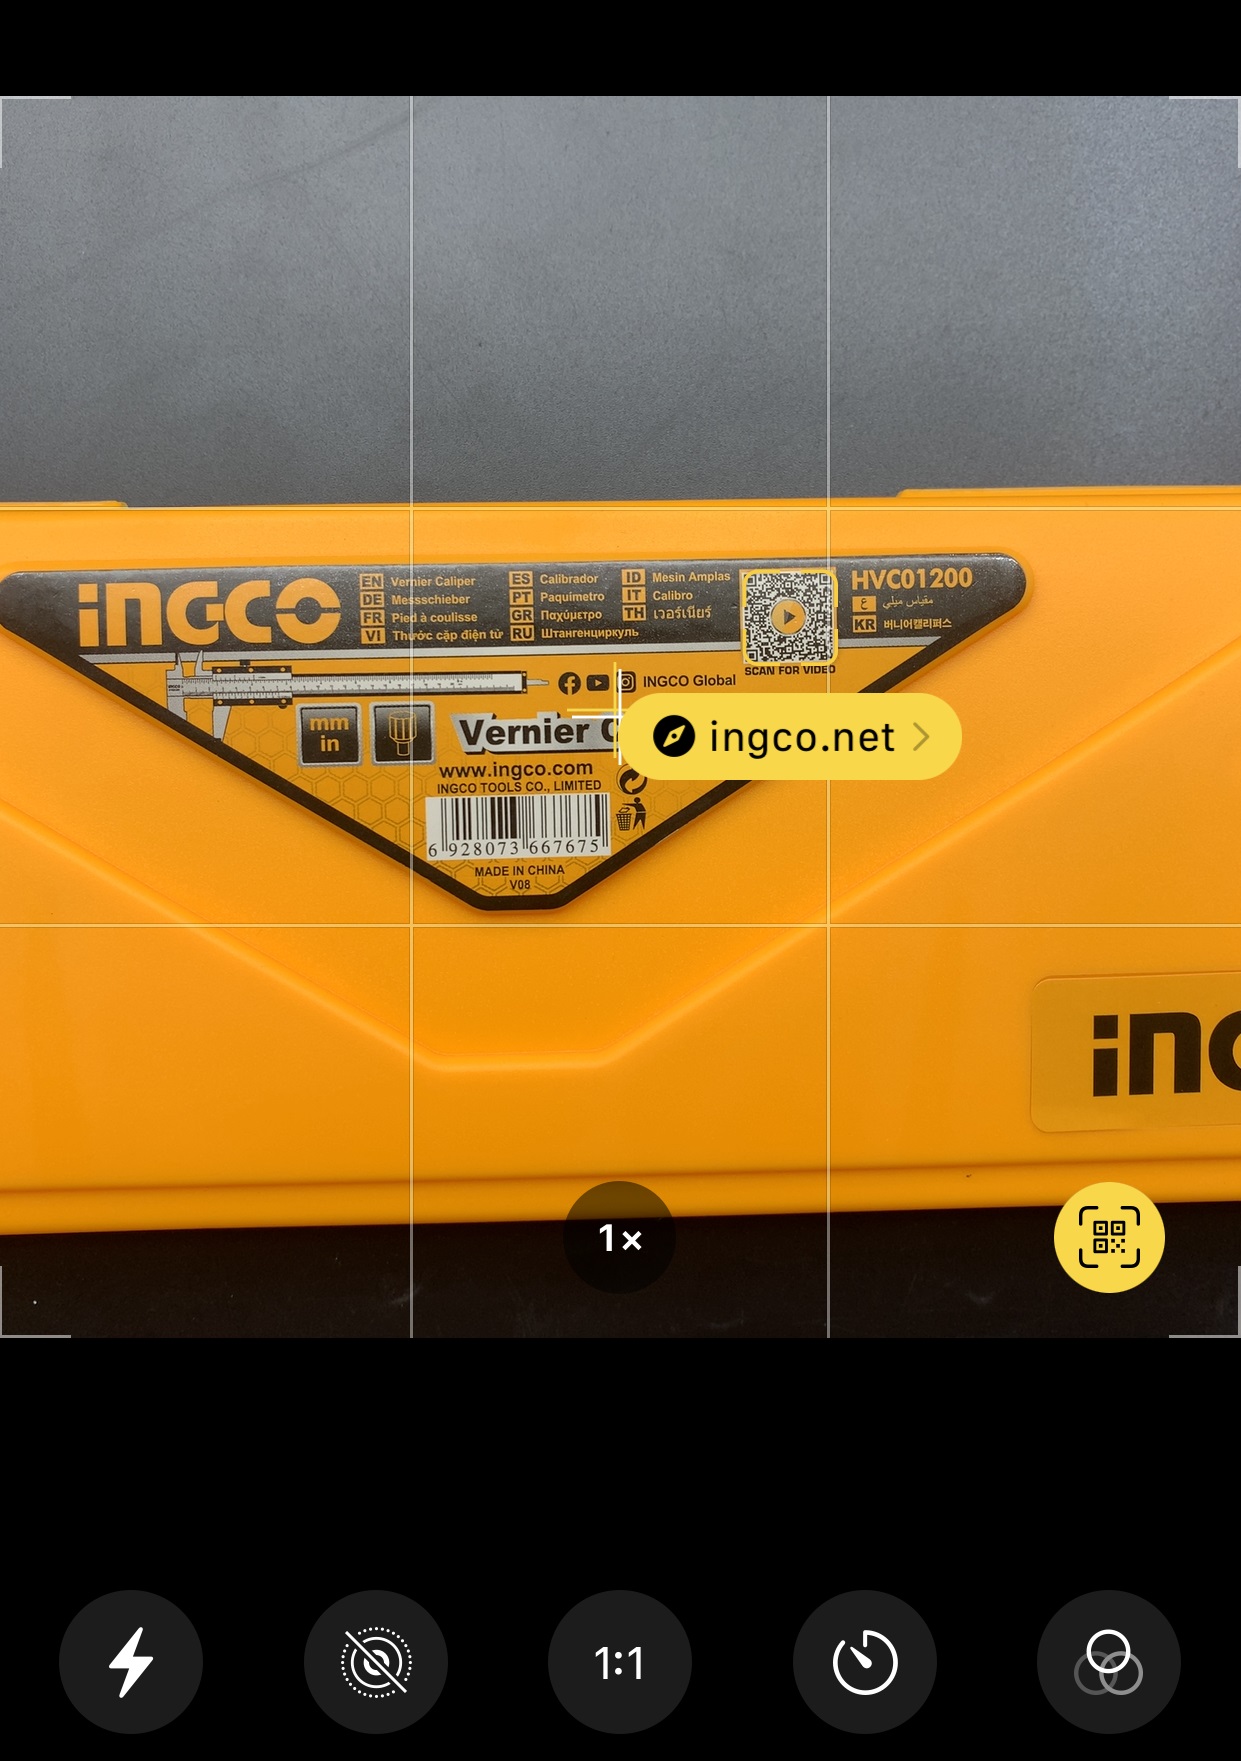 Ta có thể quét mã QR phần tem nhãn để tham khảo thêm về nhà sản xuất Ingco